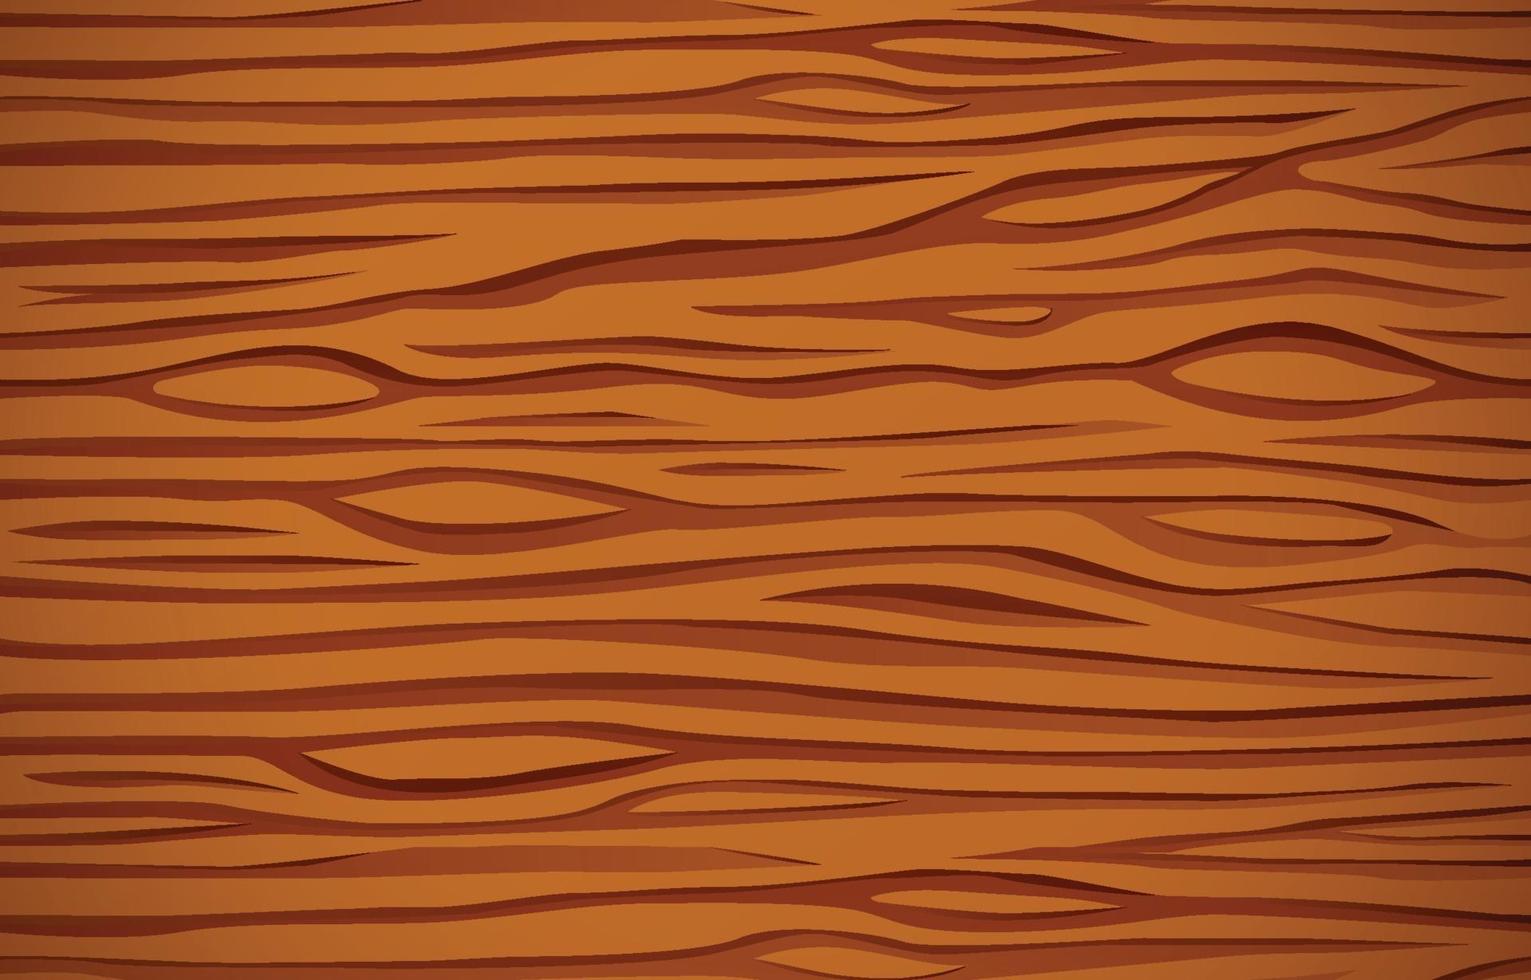 Holz Textur Hintergrund vektor